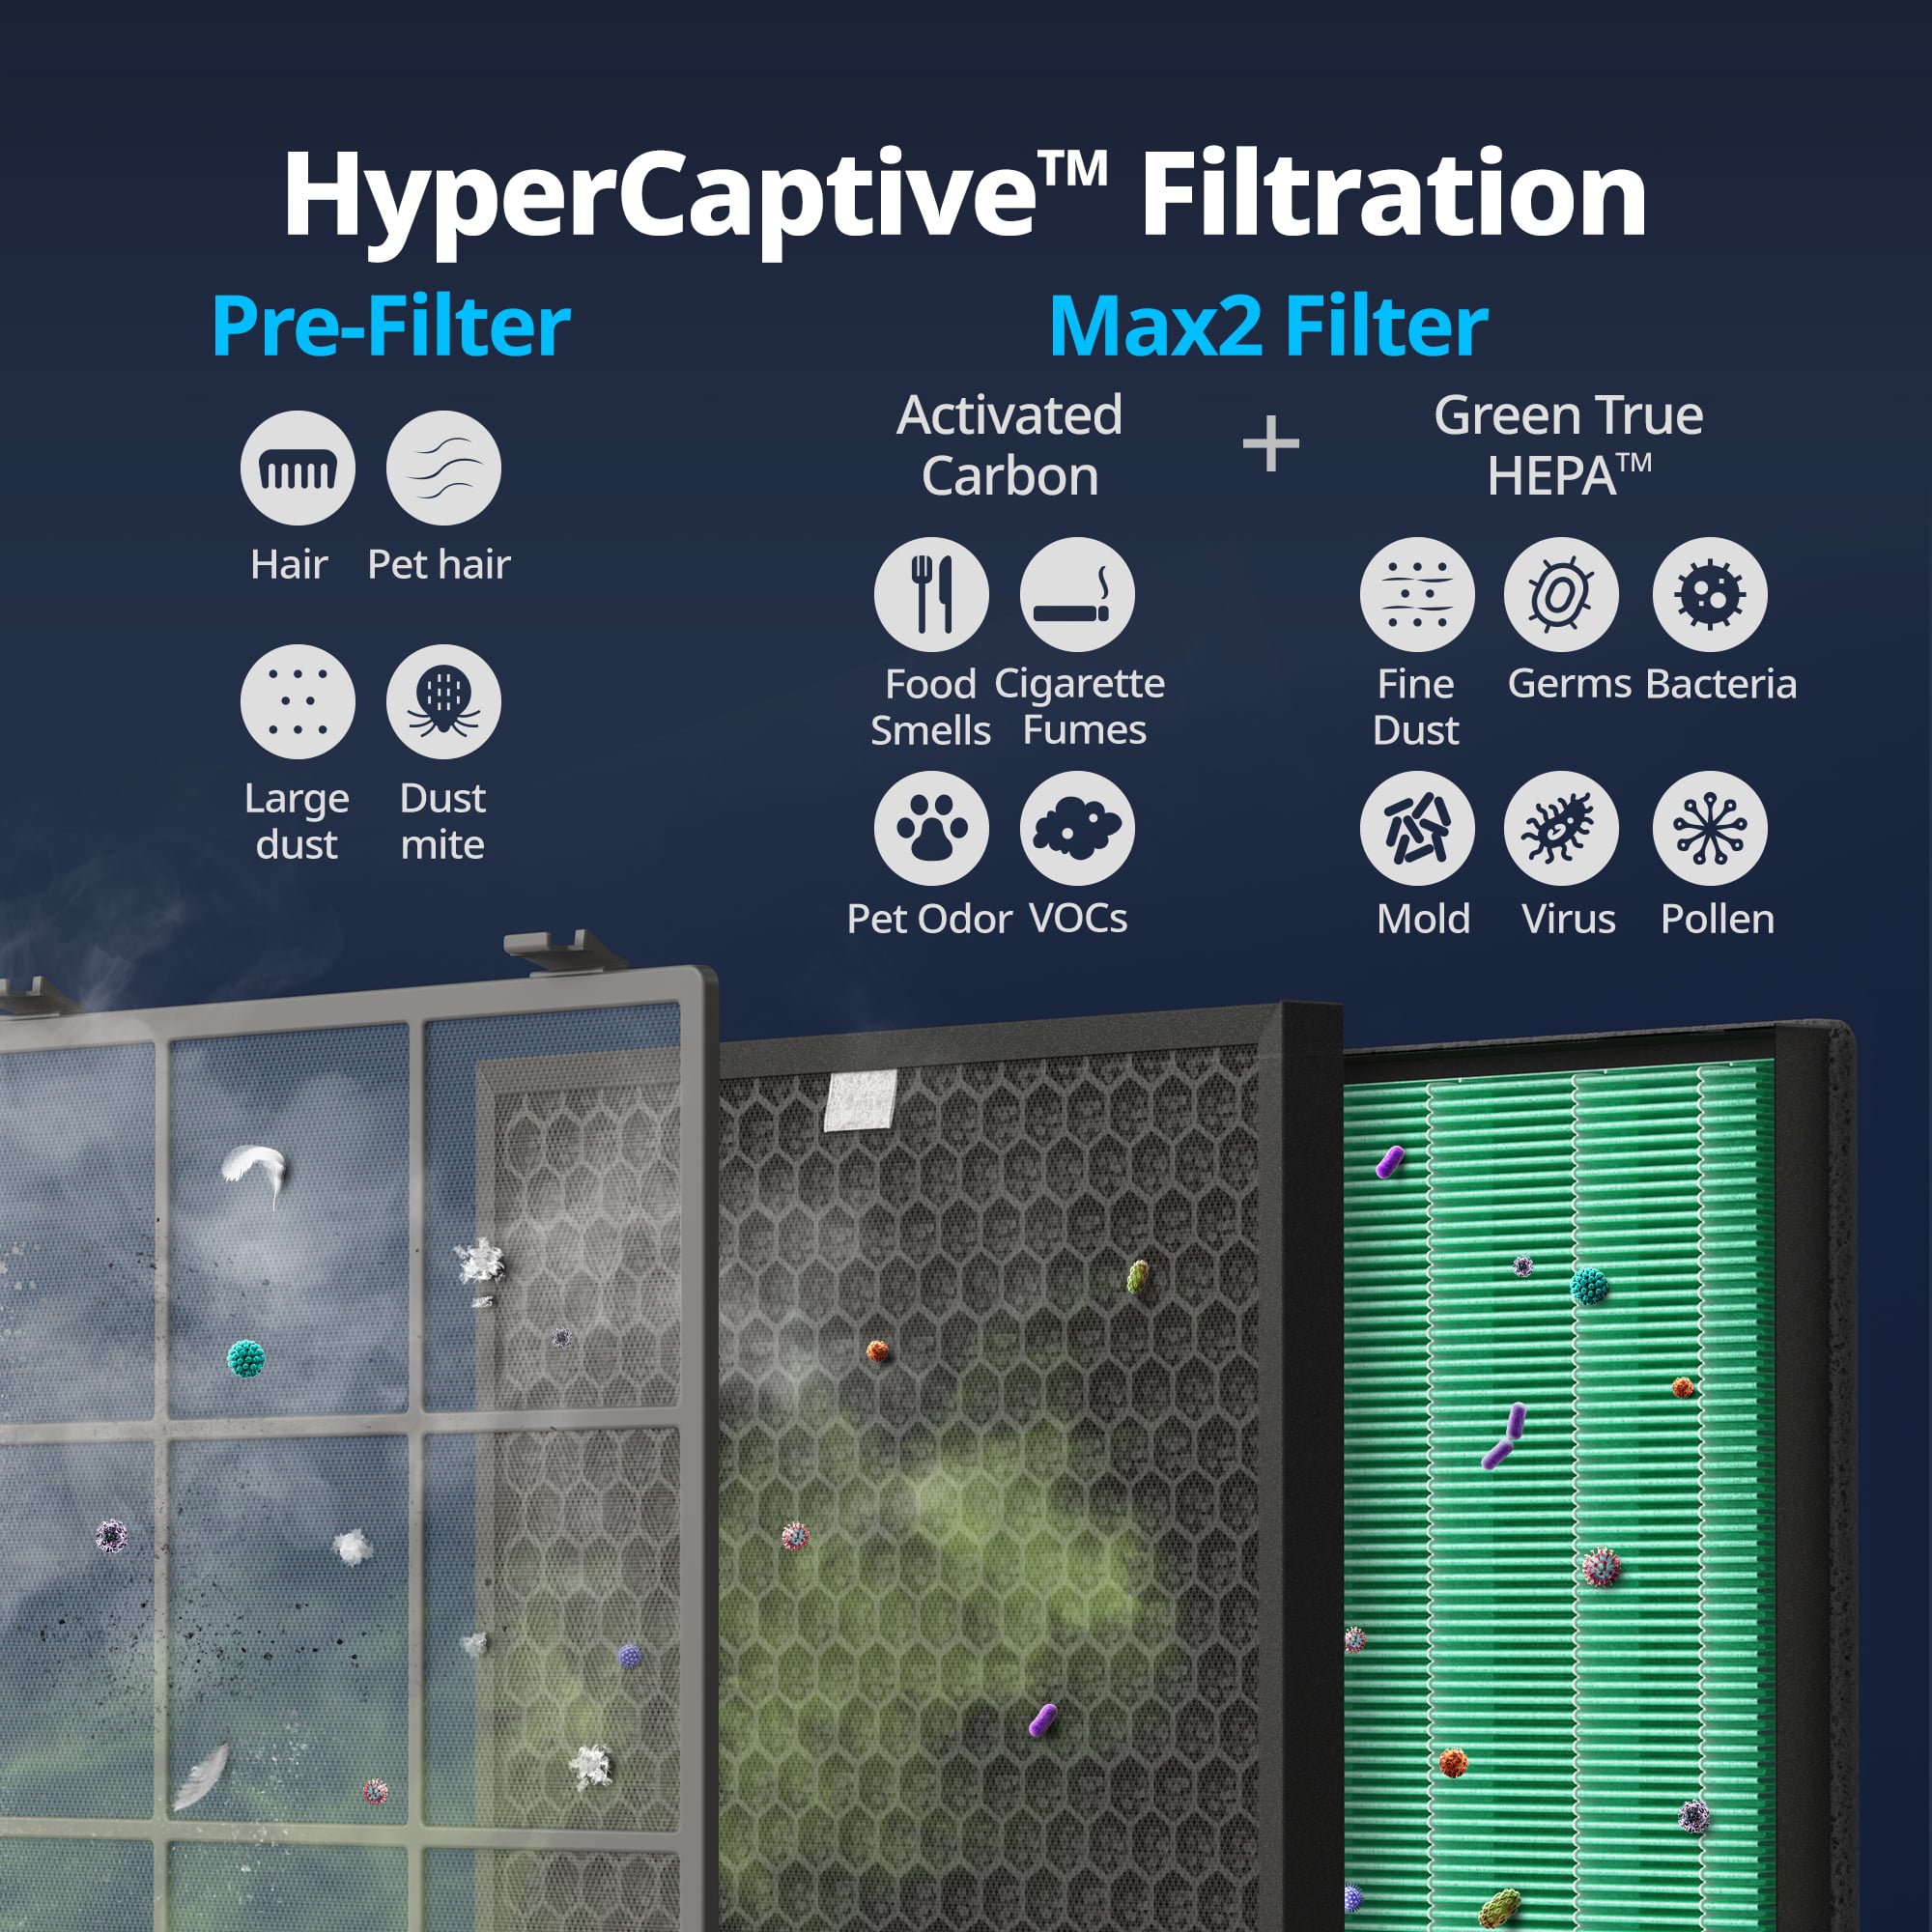 HyperCaptive Filtration